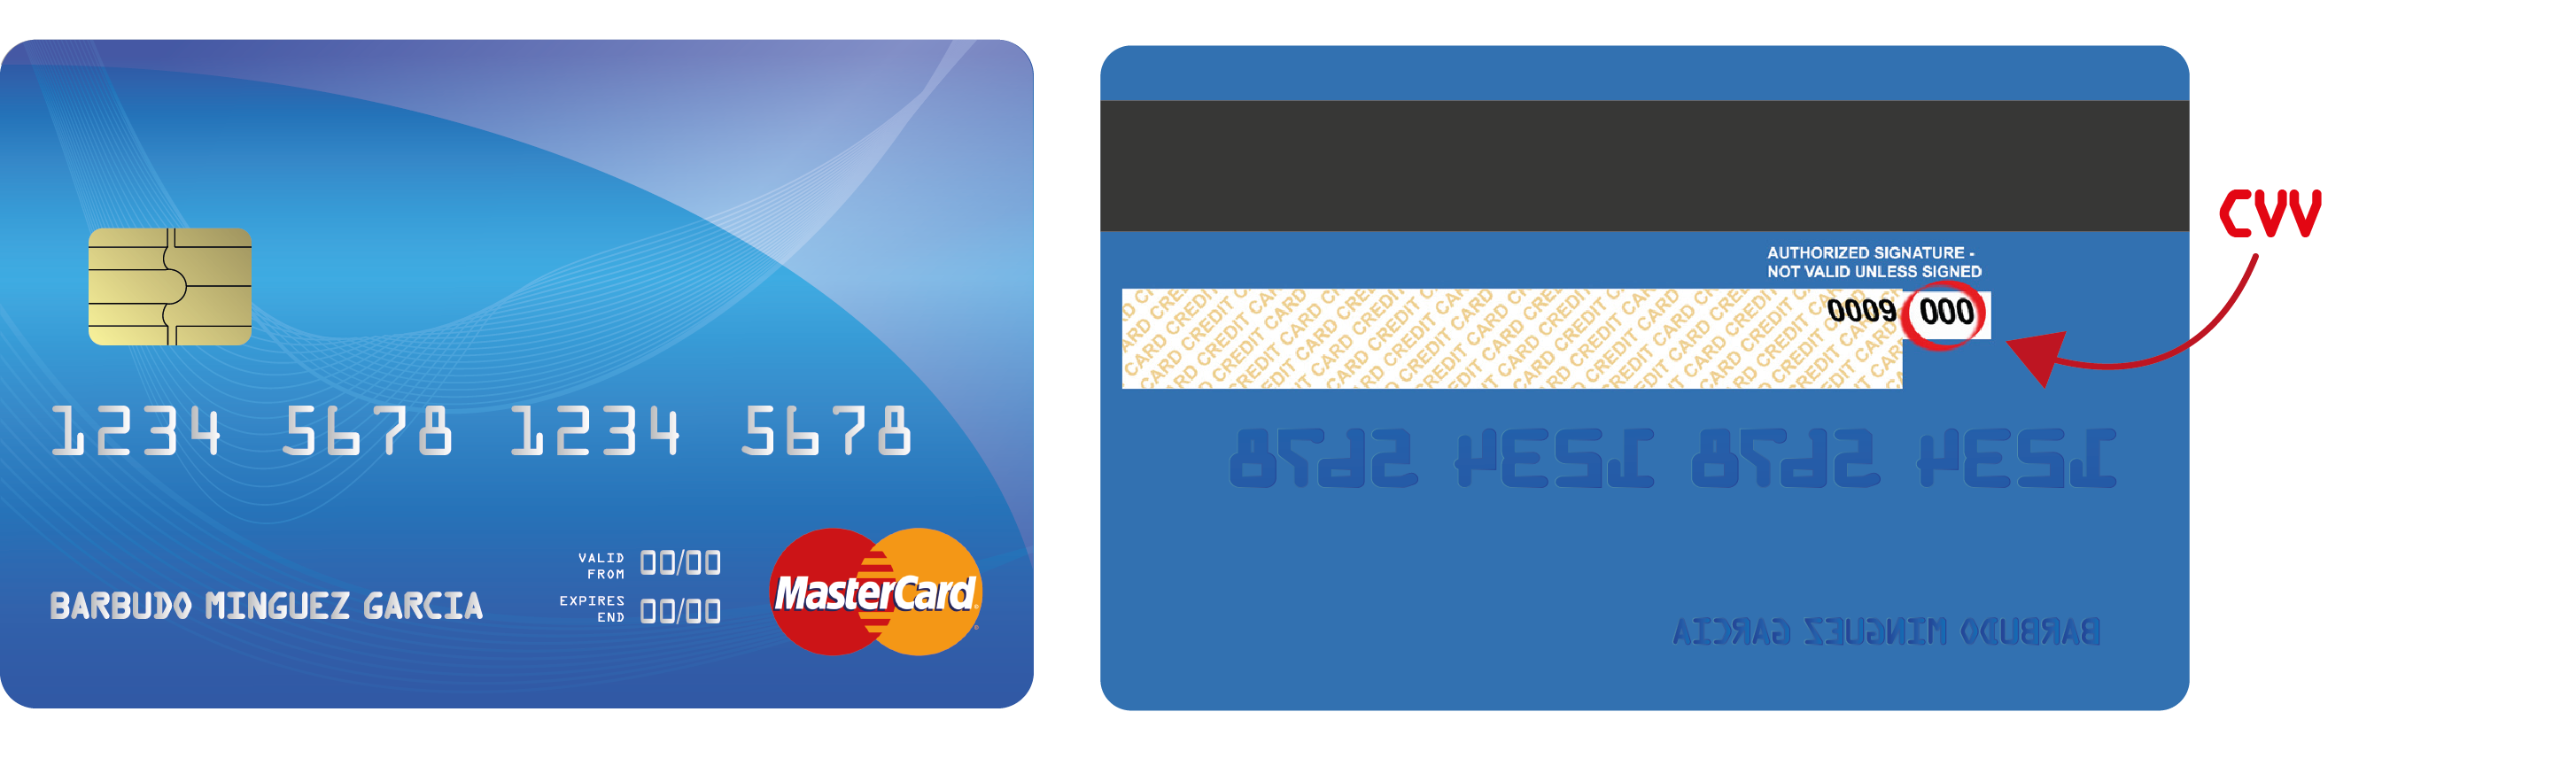 Información de que es el CVV de la tarjeta de crédito o débito